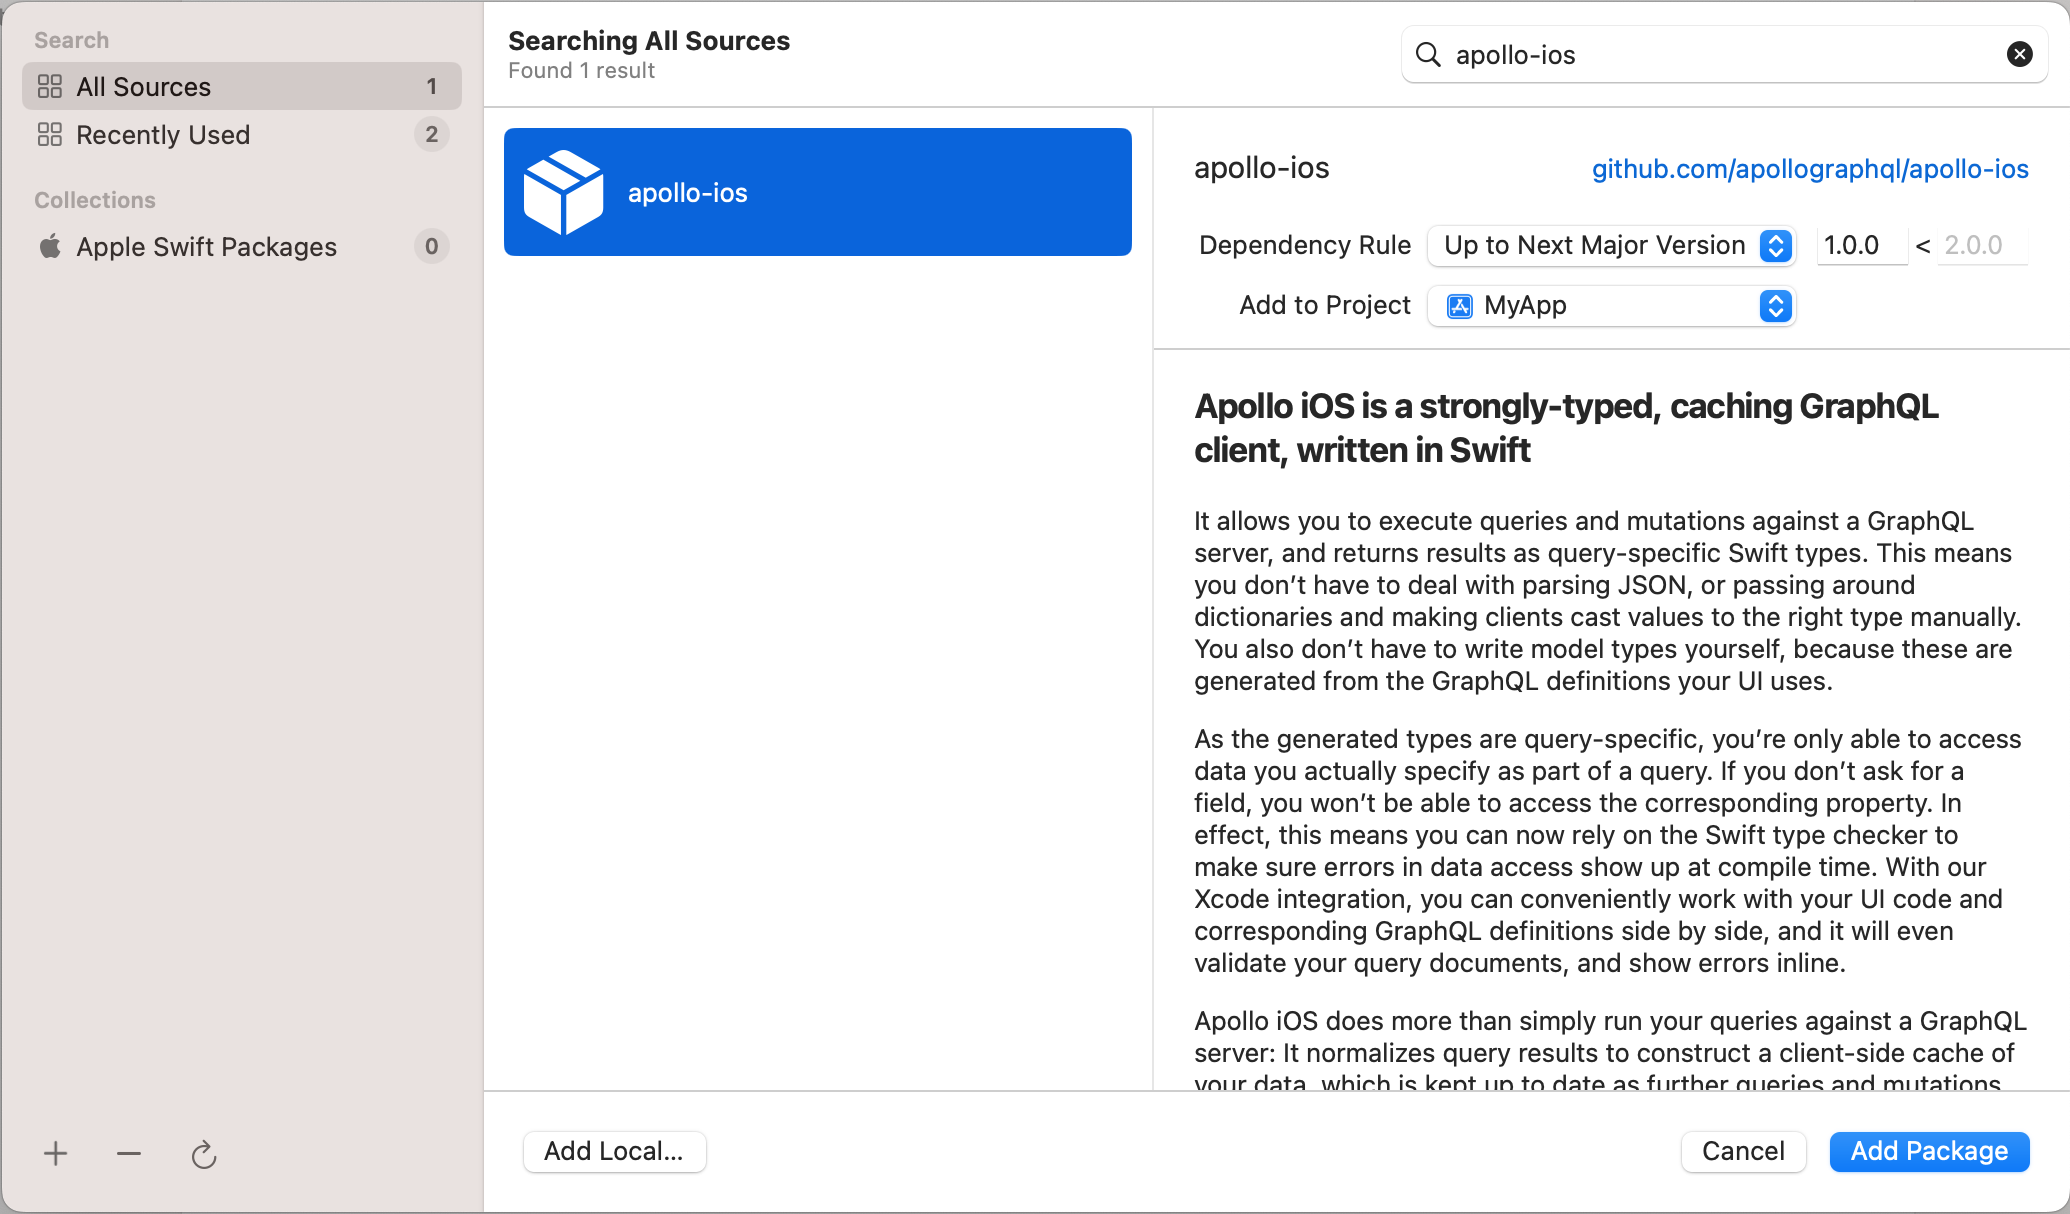 Pasting the Apollo iOS GitHub URL